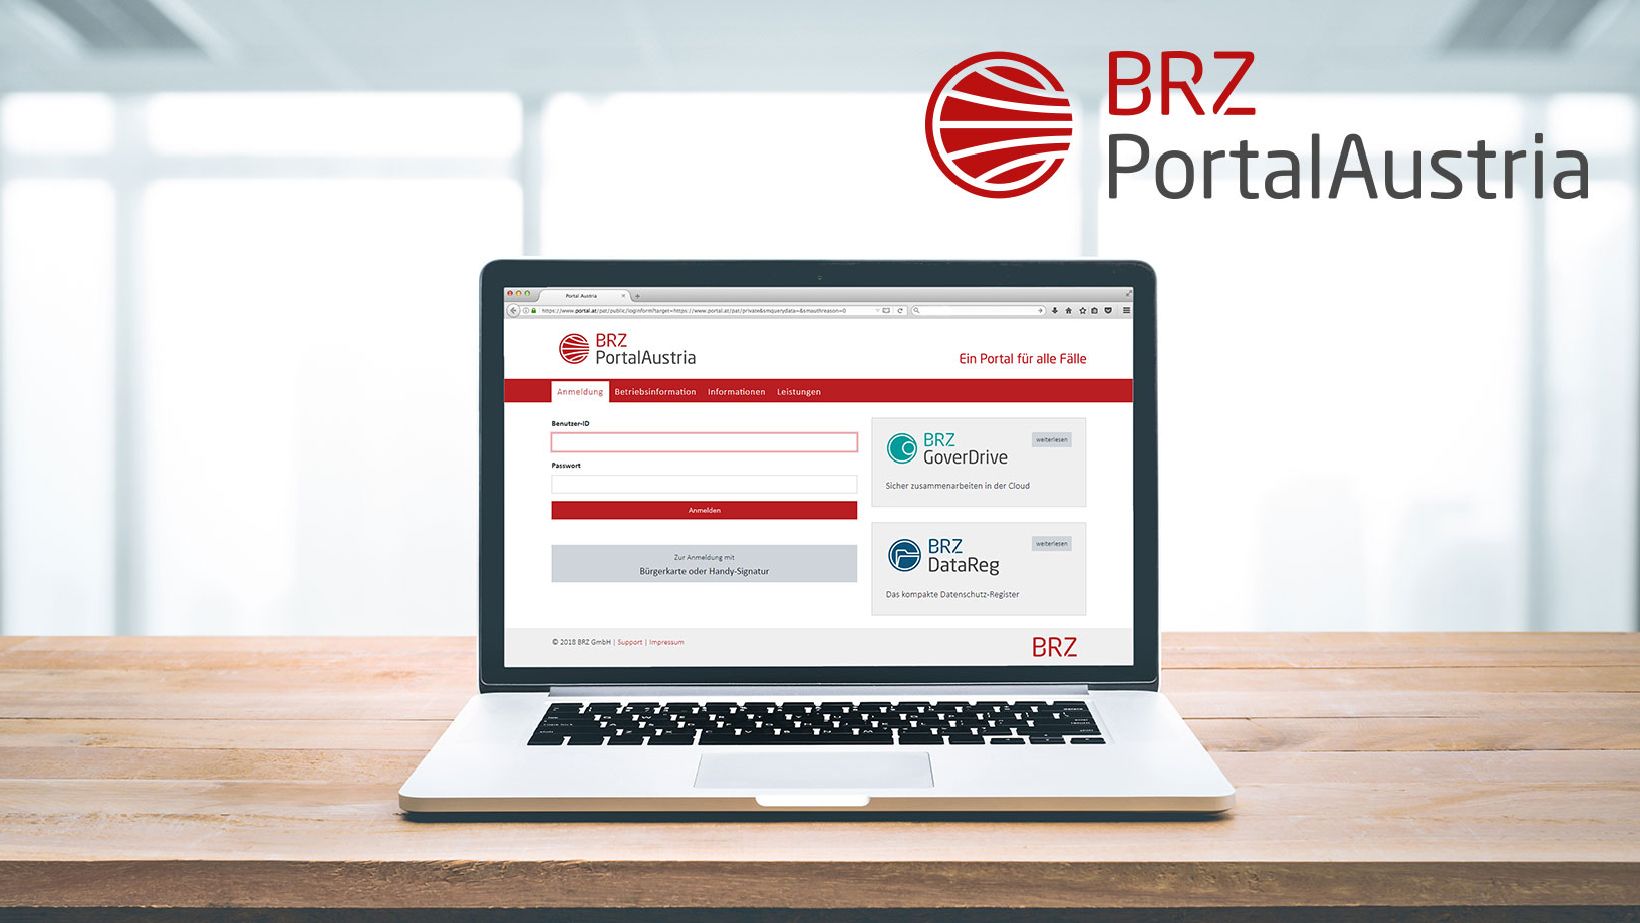 Produktposter zum BRZ PortalAustria, ein Laptop mit einem Screenshot vom Produkt